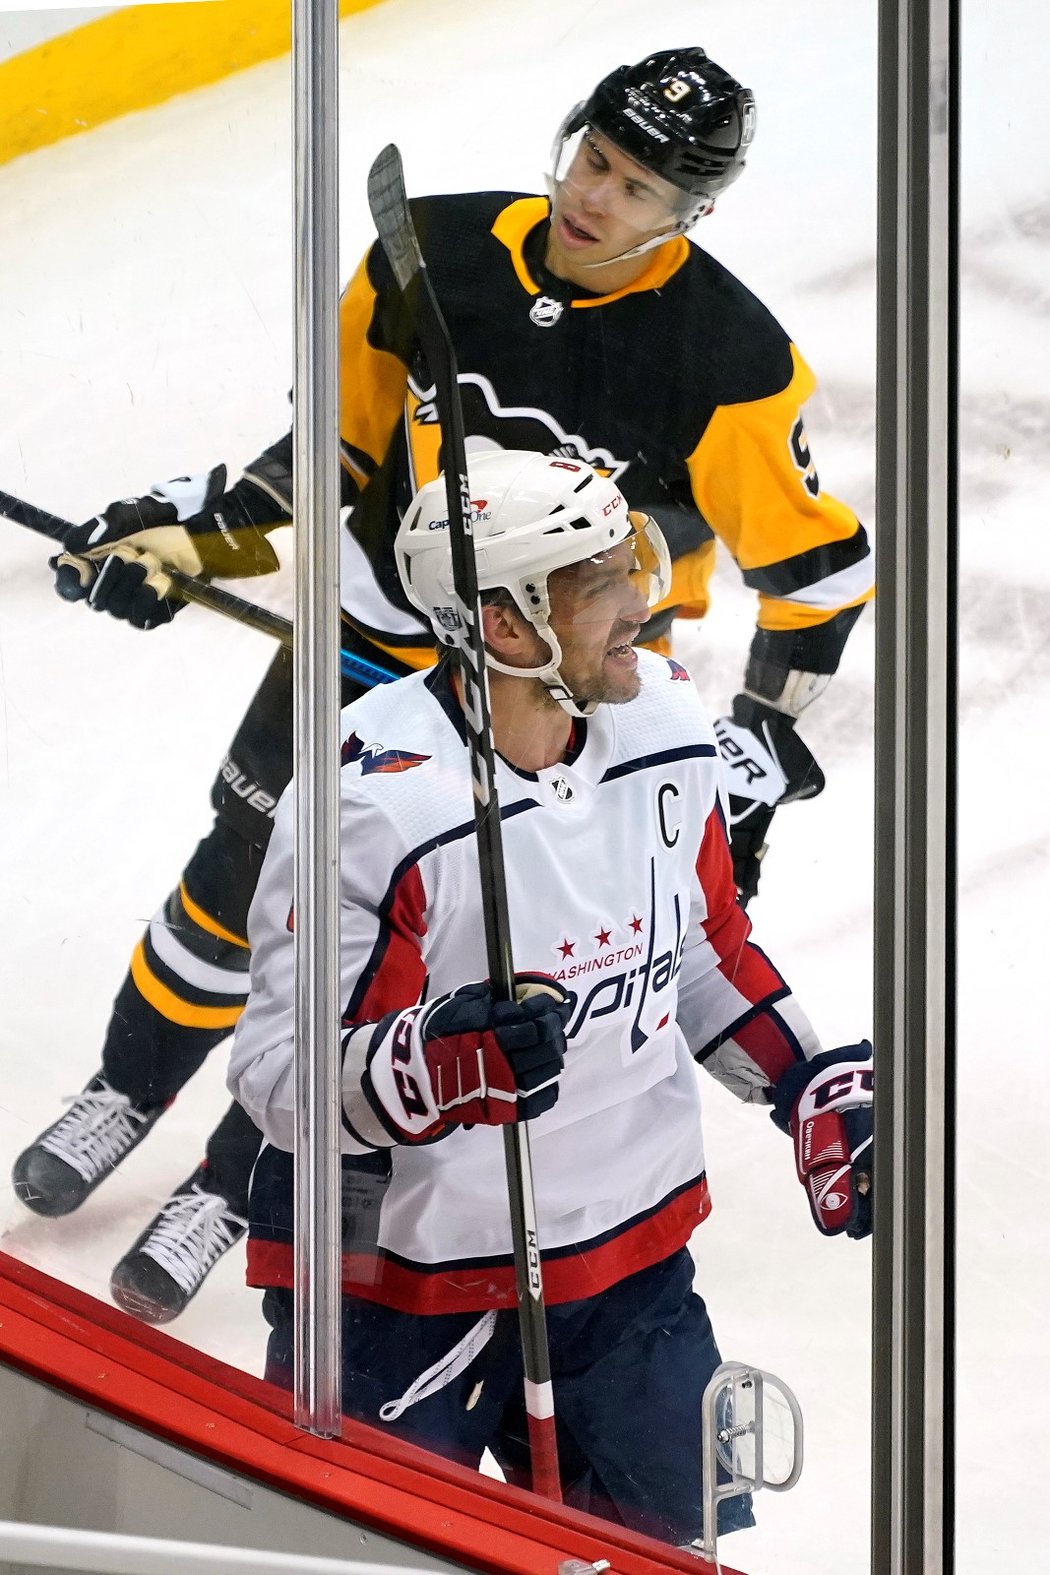 Washington kvůli porušení protikoronavirových opatření přijde v NHL na nějaký čas o kapitána Alexandra Ovečkina.